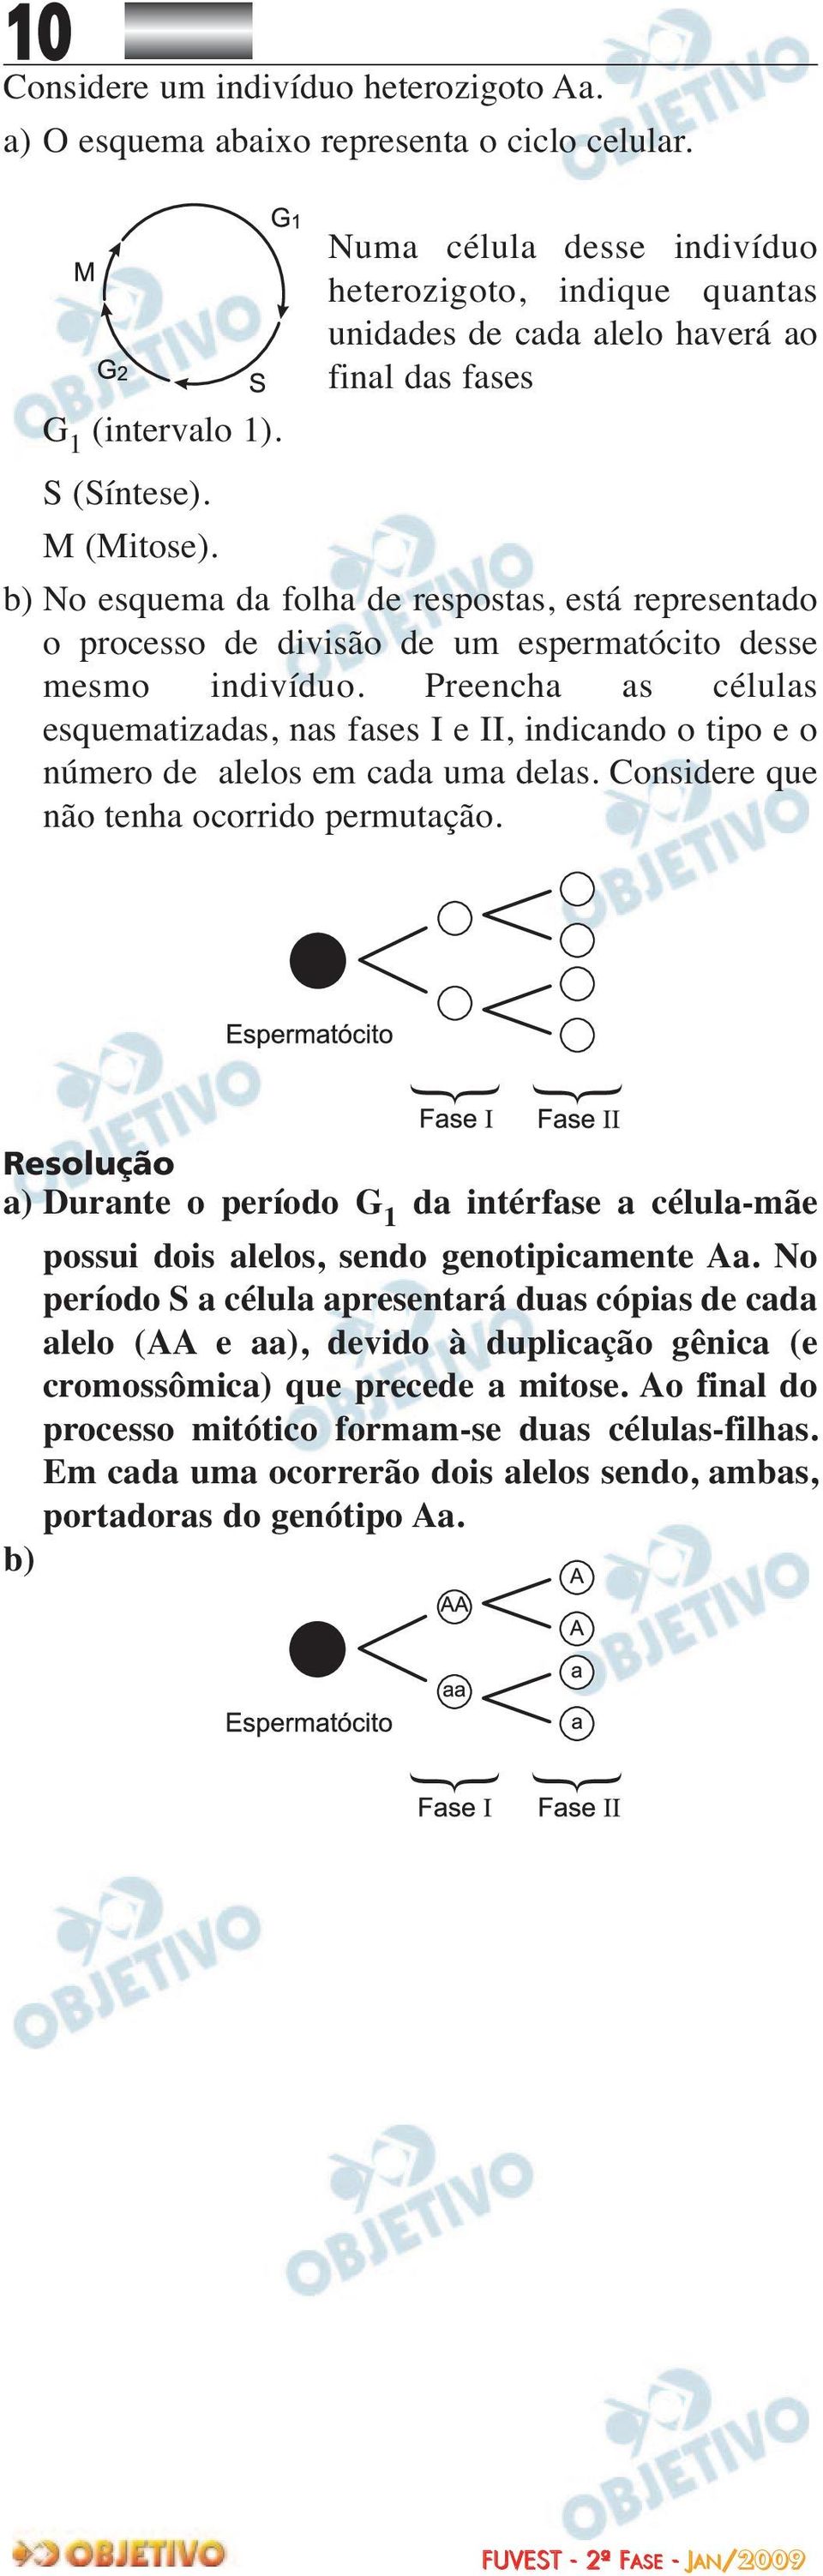 b) No esquema da folha de respostas, está representado o processo de divisão de um espermatócito desse mesmo indivíduo.